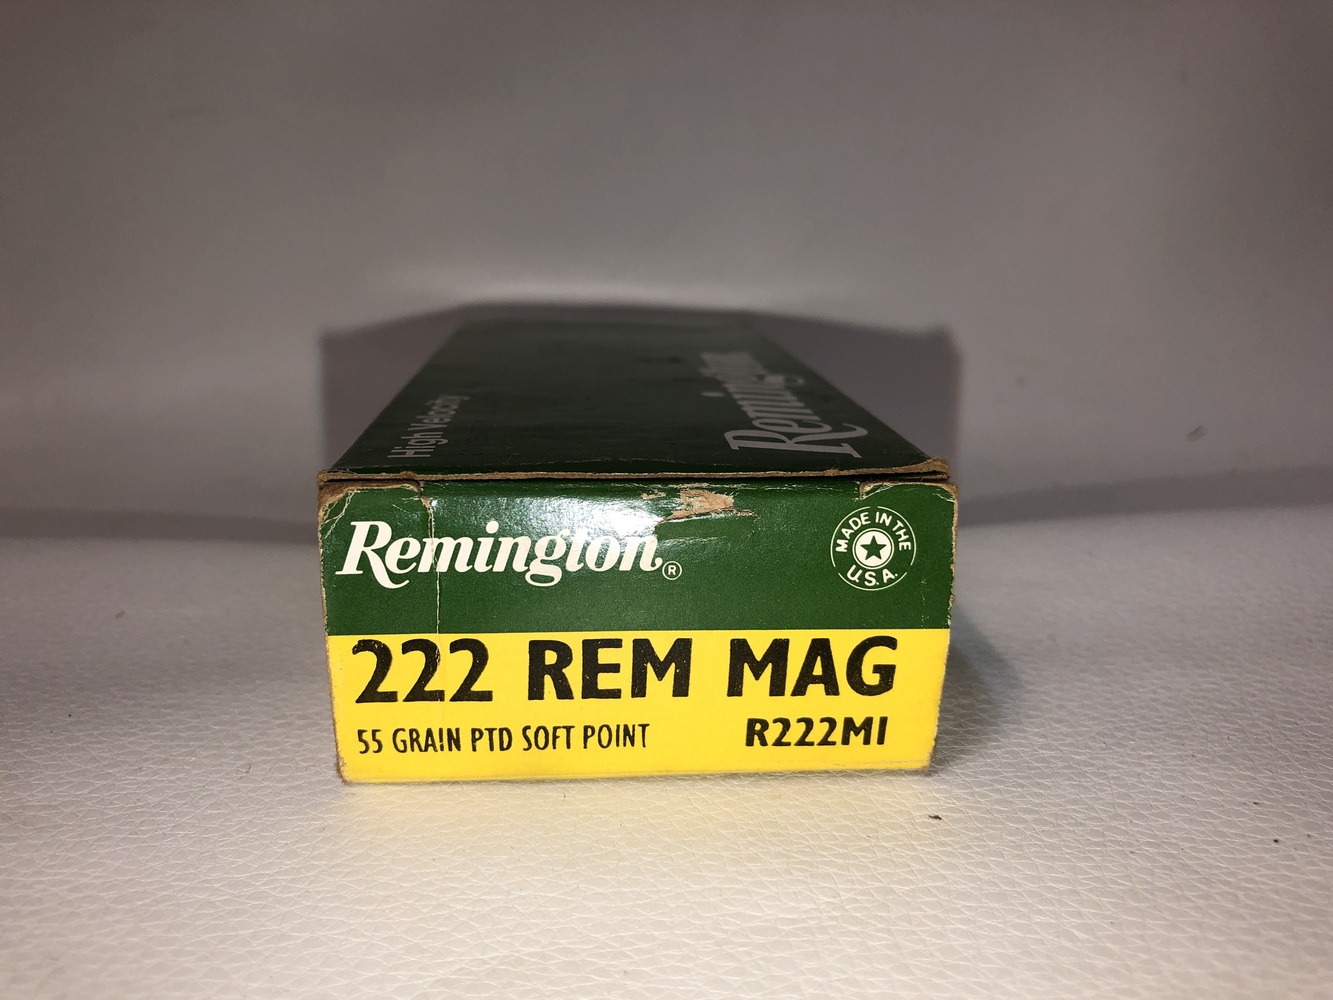 REMINGTON 222 REM MAG 55 GR PTD SOFT POINT -img-0